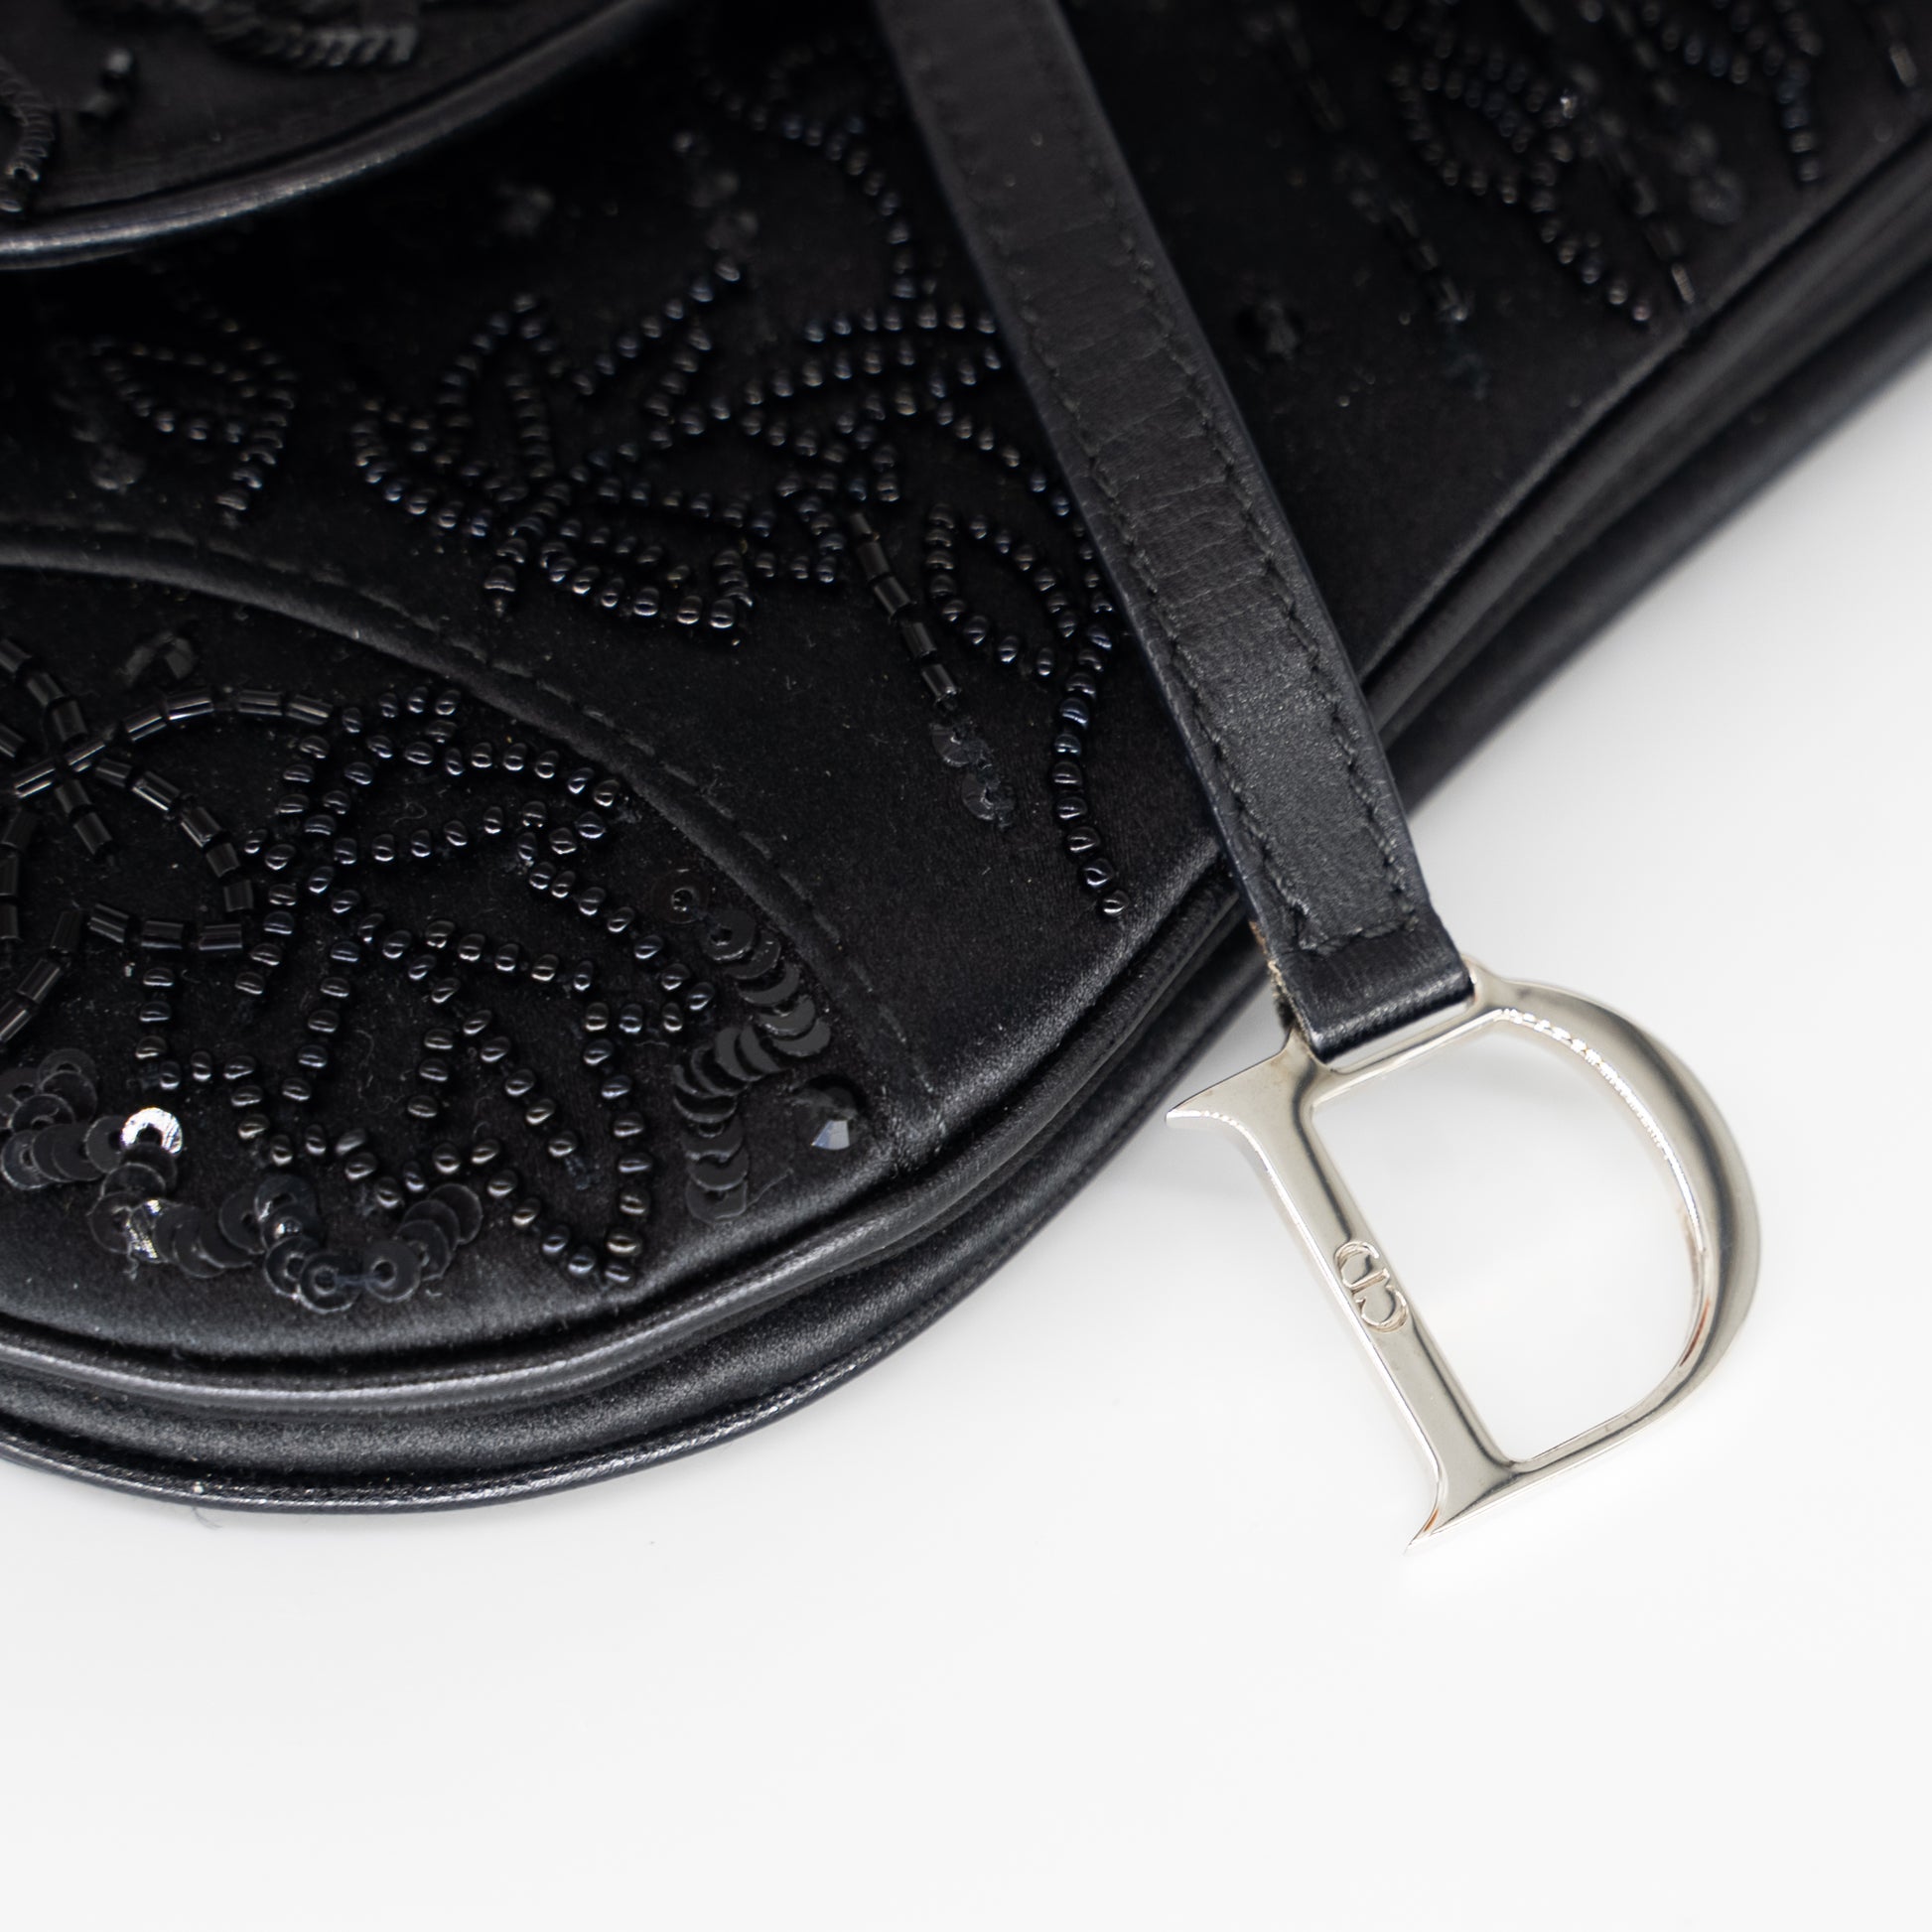 Christian Dior Beaded Micro Saddle Bag - ShopStyle